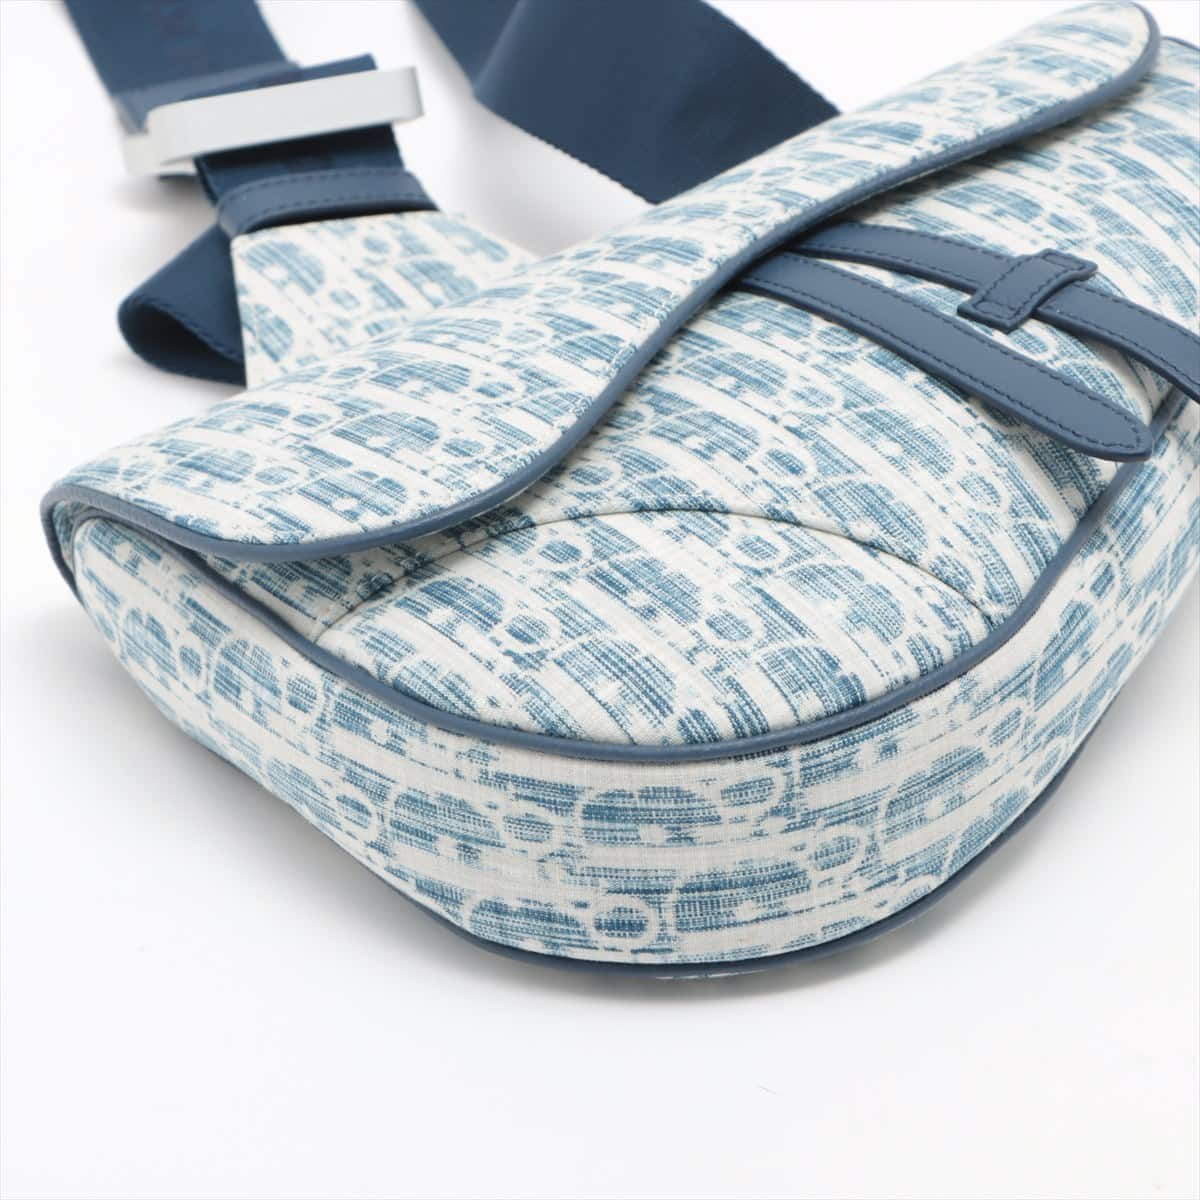 DIOR Trotter Saddle Bag canvas Sling backpack Blue x white